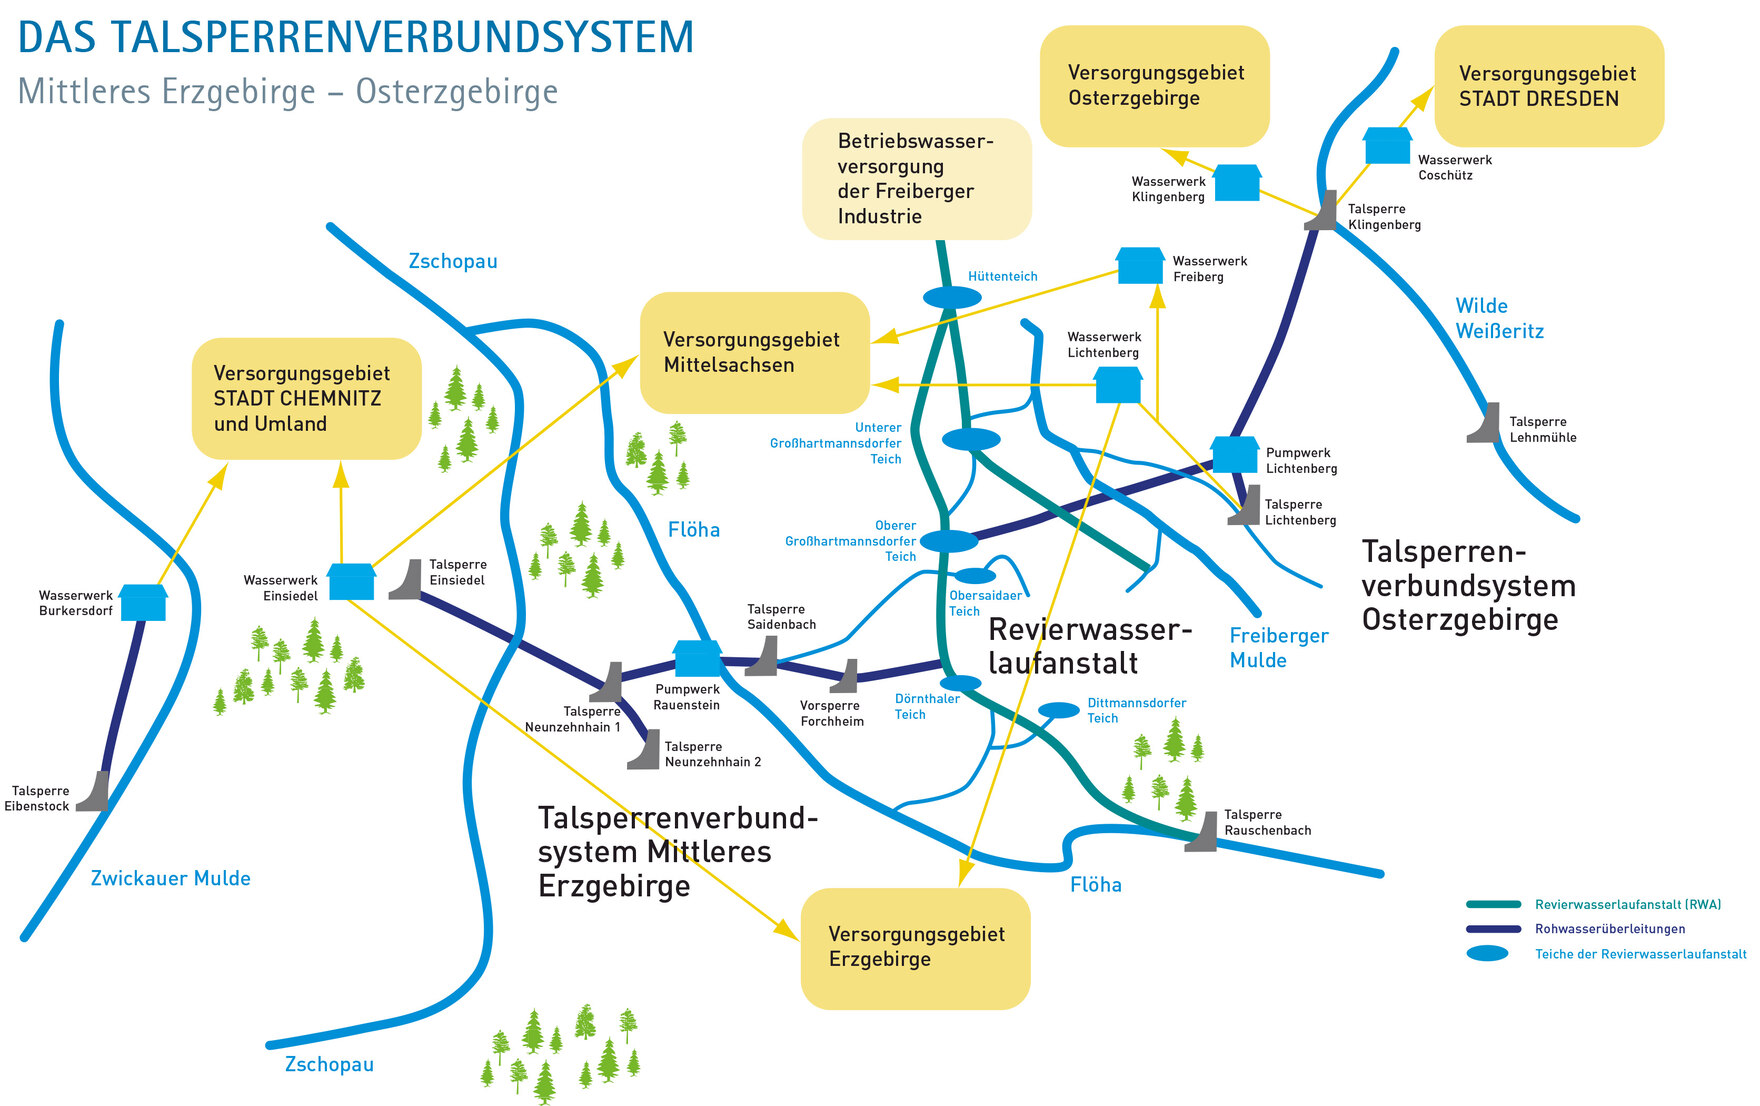 Grafische Darstellung des Talsperrenverbundsystems "Mittleres Erzgebirge - Osterzgebirge"